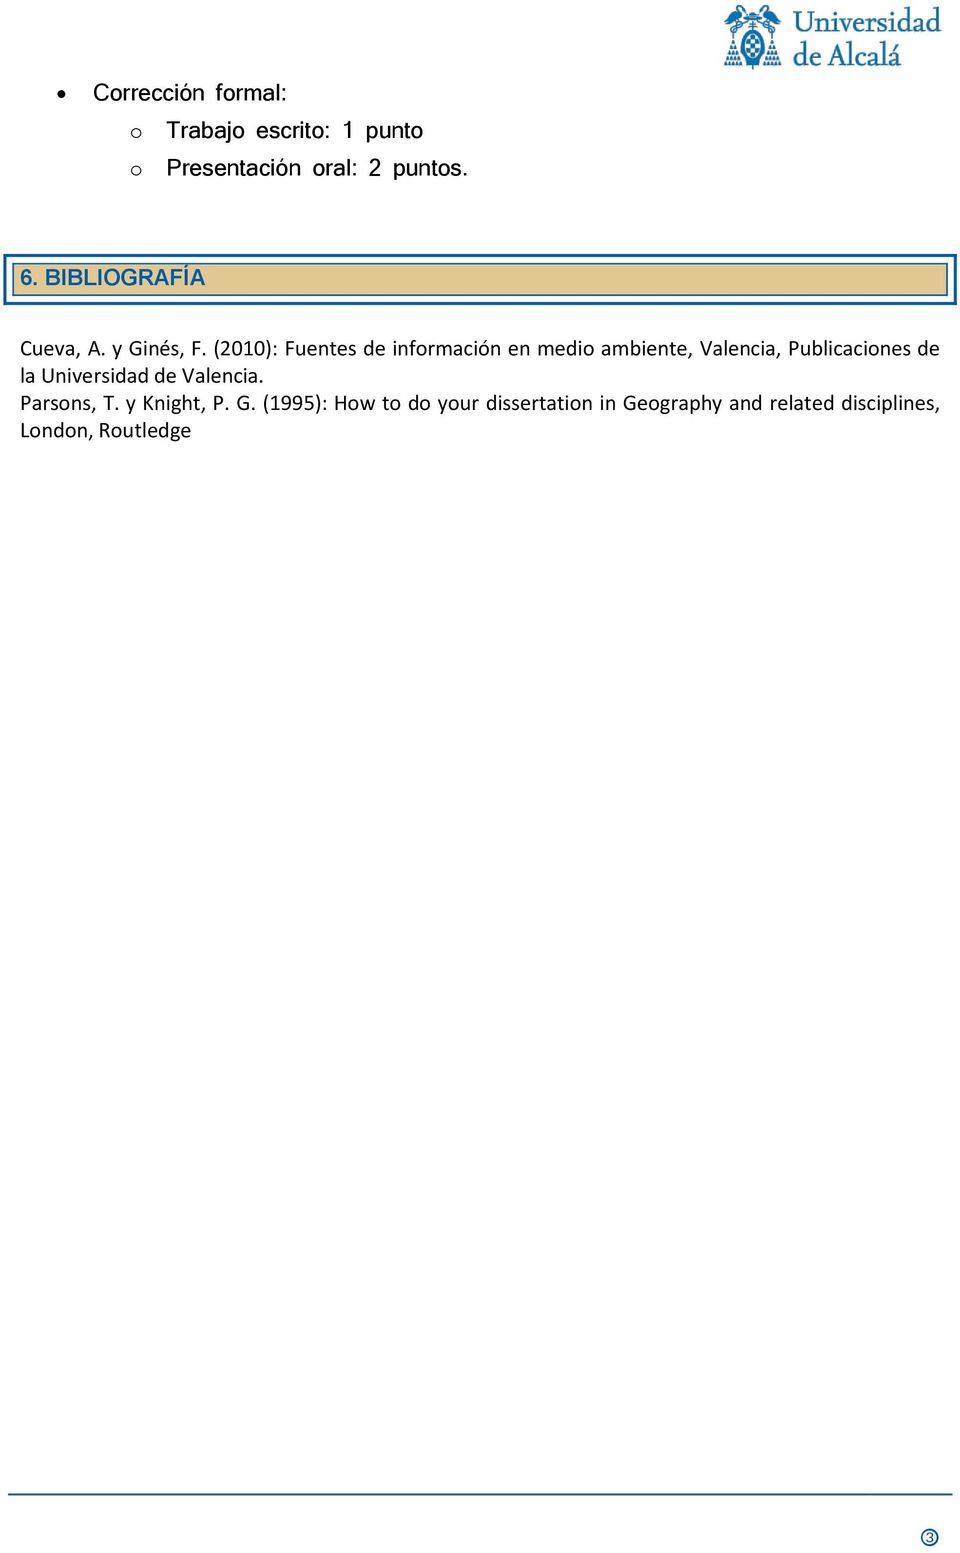 (2010): Fuentes de información en medio ambiente, Valencia, Publicaciones de la